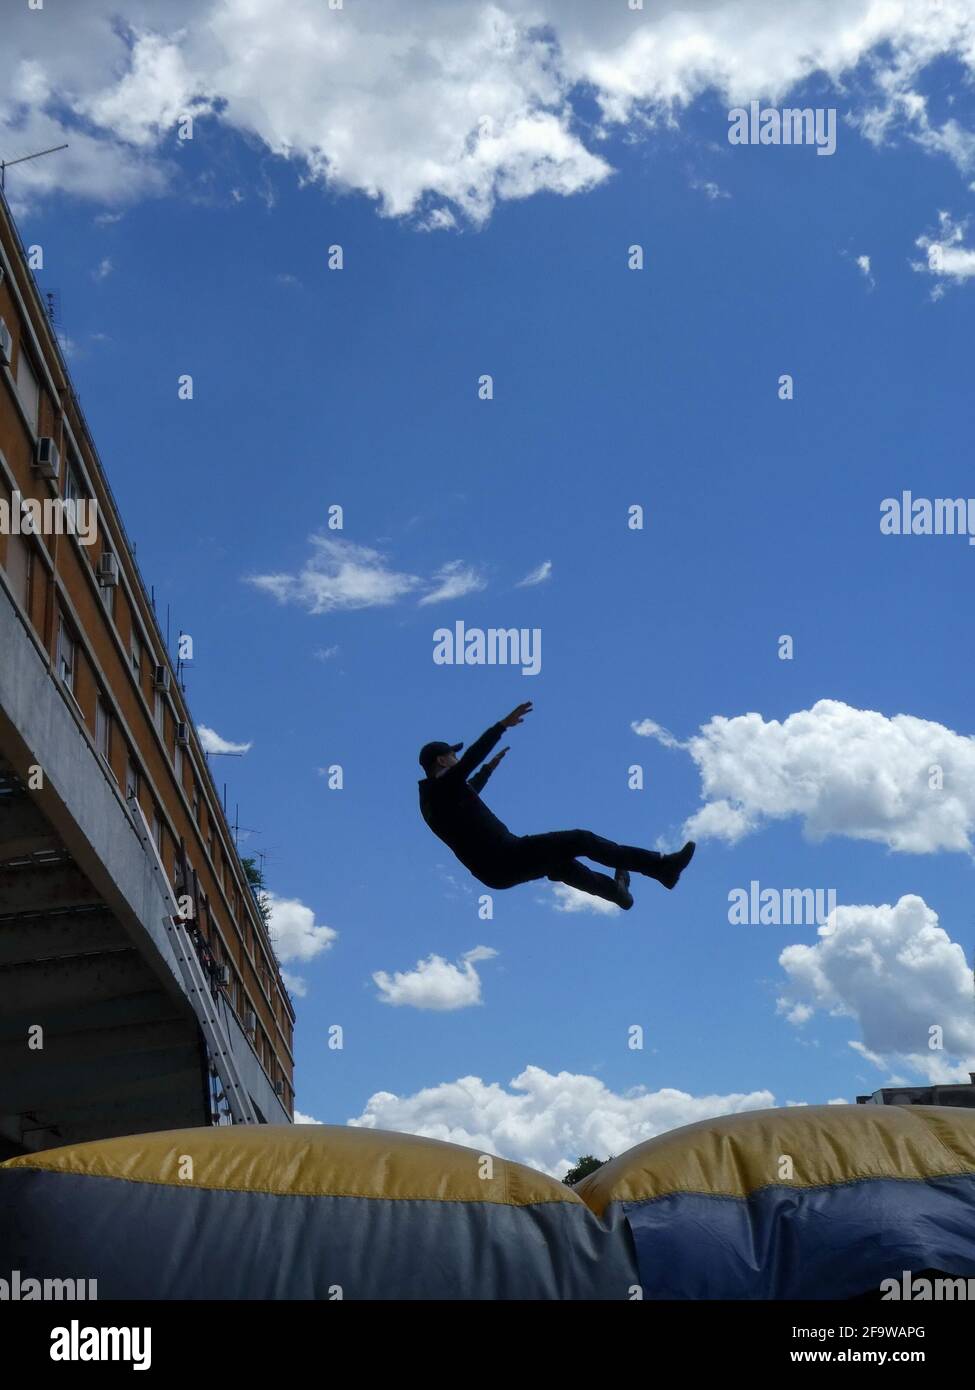 NOVI SAD, SERBIEN - 21. Mai 2019: Mann springt zum Aufblasbaren  Rettungs-Kissen (auch bekannt als Sprungkissen oder Luftkissen) - Menschen  retten Stockfotografie - Alamy